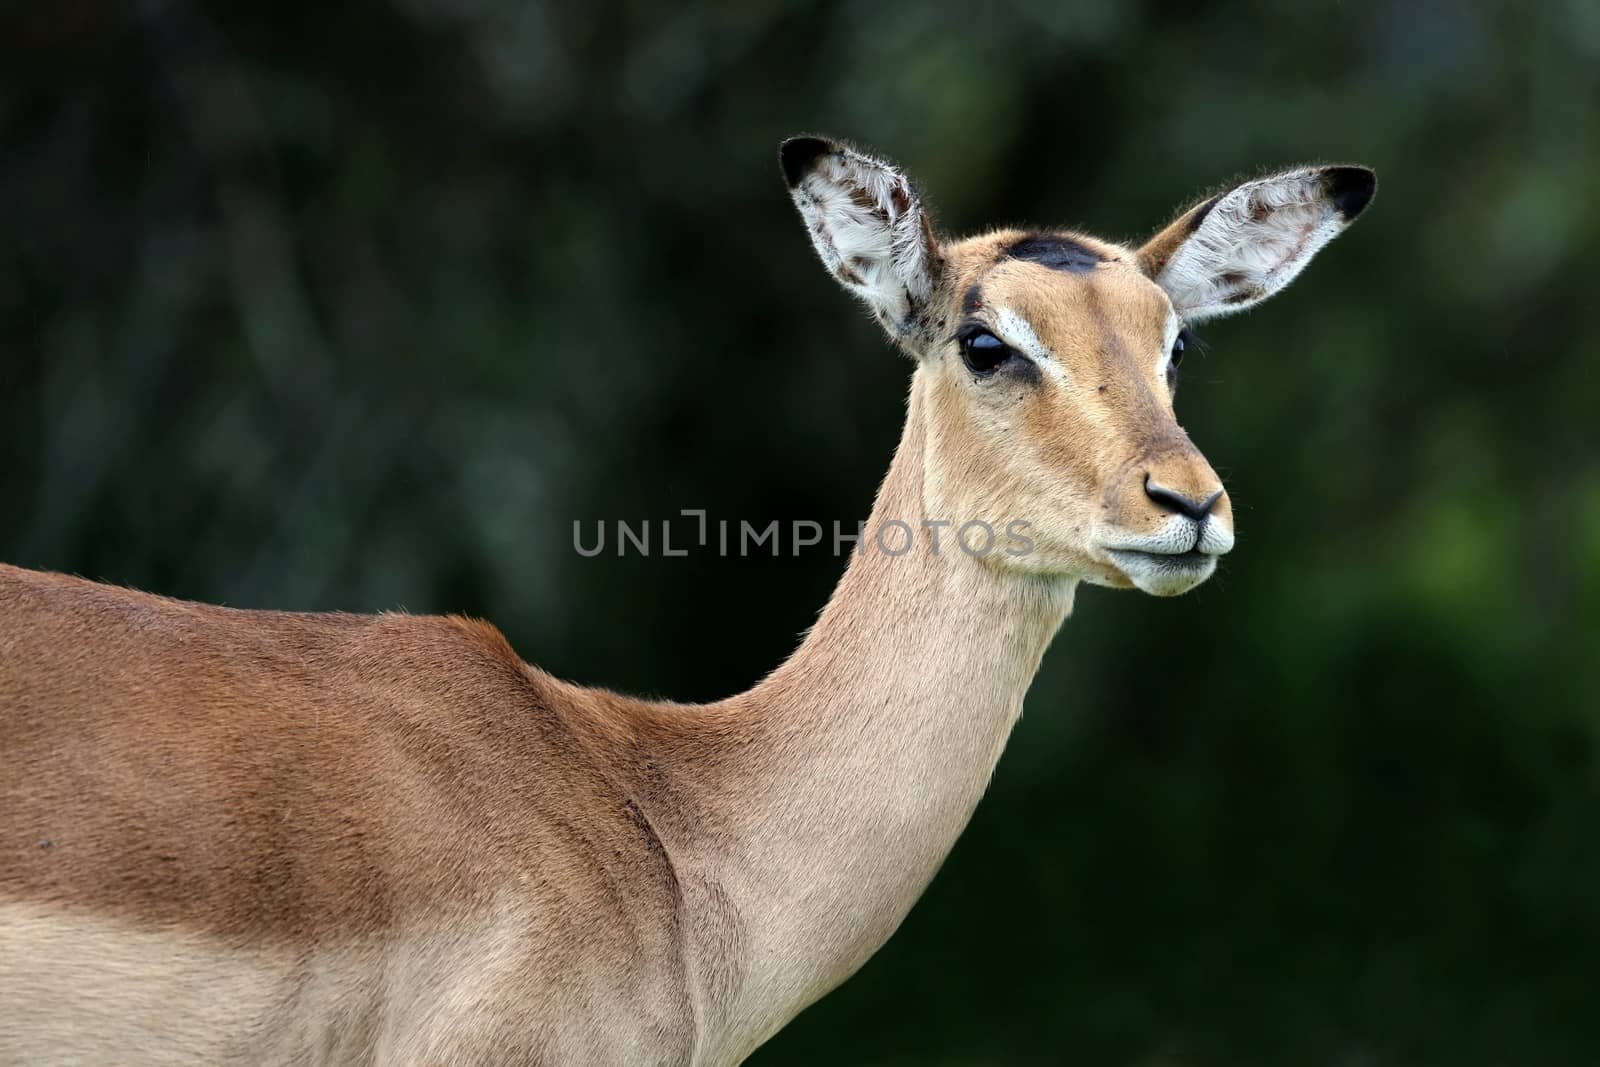 Female or Ewe Impala antelope with large ears